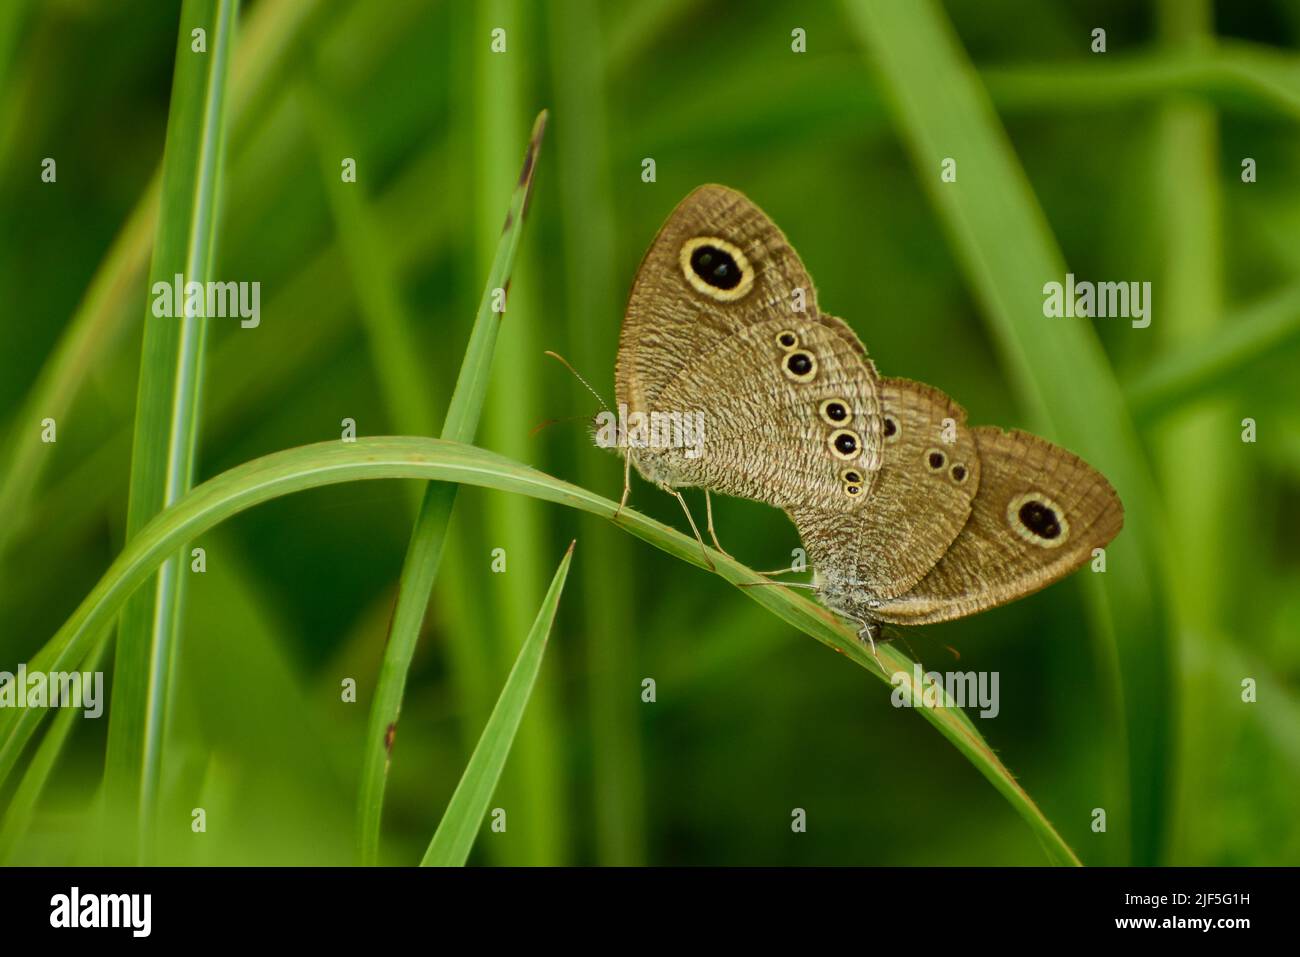 Paarige Schmetterlinge. Ypthima baldus, der gemeinsame fünf-Ring, ist eine Art von Satyrinae Schmetterling in Asien gefunden. Stockfoto